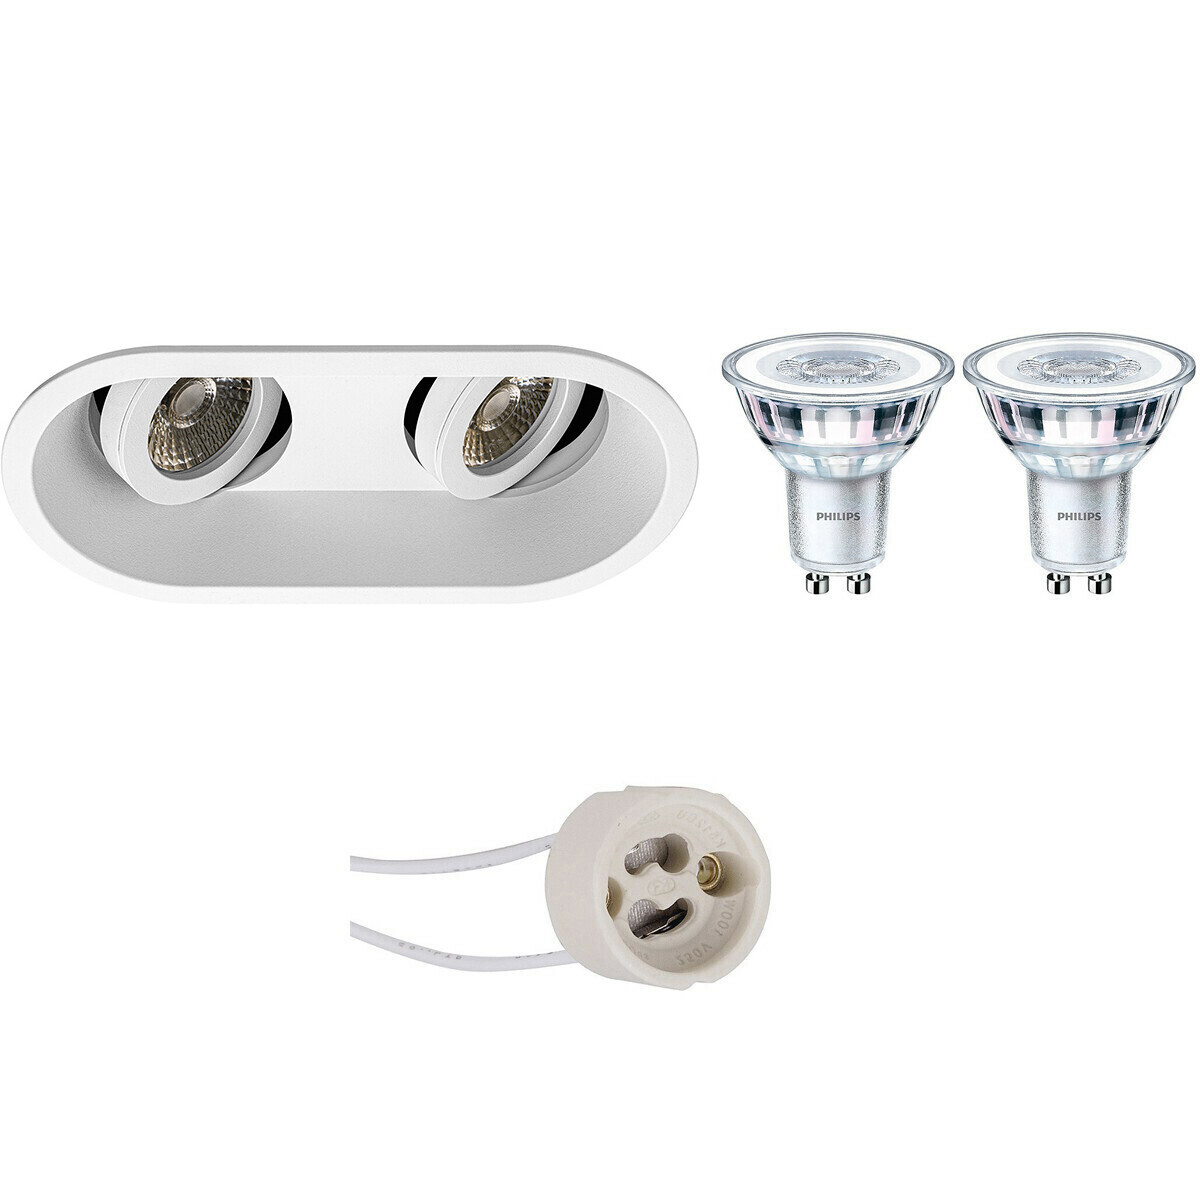 BES LED LED Spot Set - Pragmi Zano Pro - GU10 Fitting - Inbouw Ovaal Dubbel - Mat Wit - Kantelbaar - 185x93mm - Philips - CorePro 827 36D - 5W - Warm Wit 2700K - Dimbaar